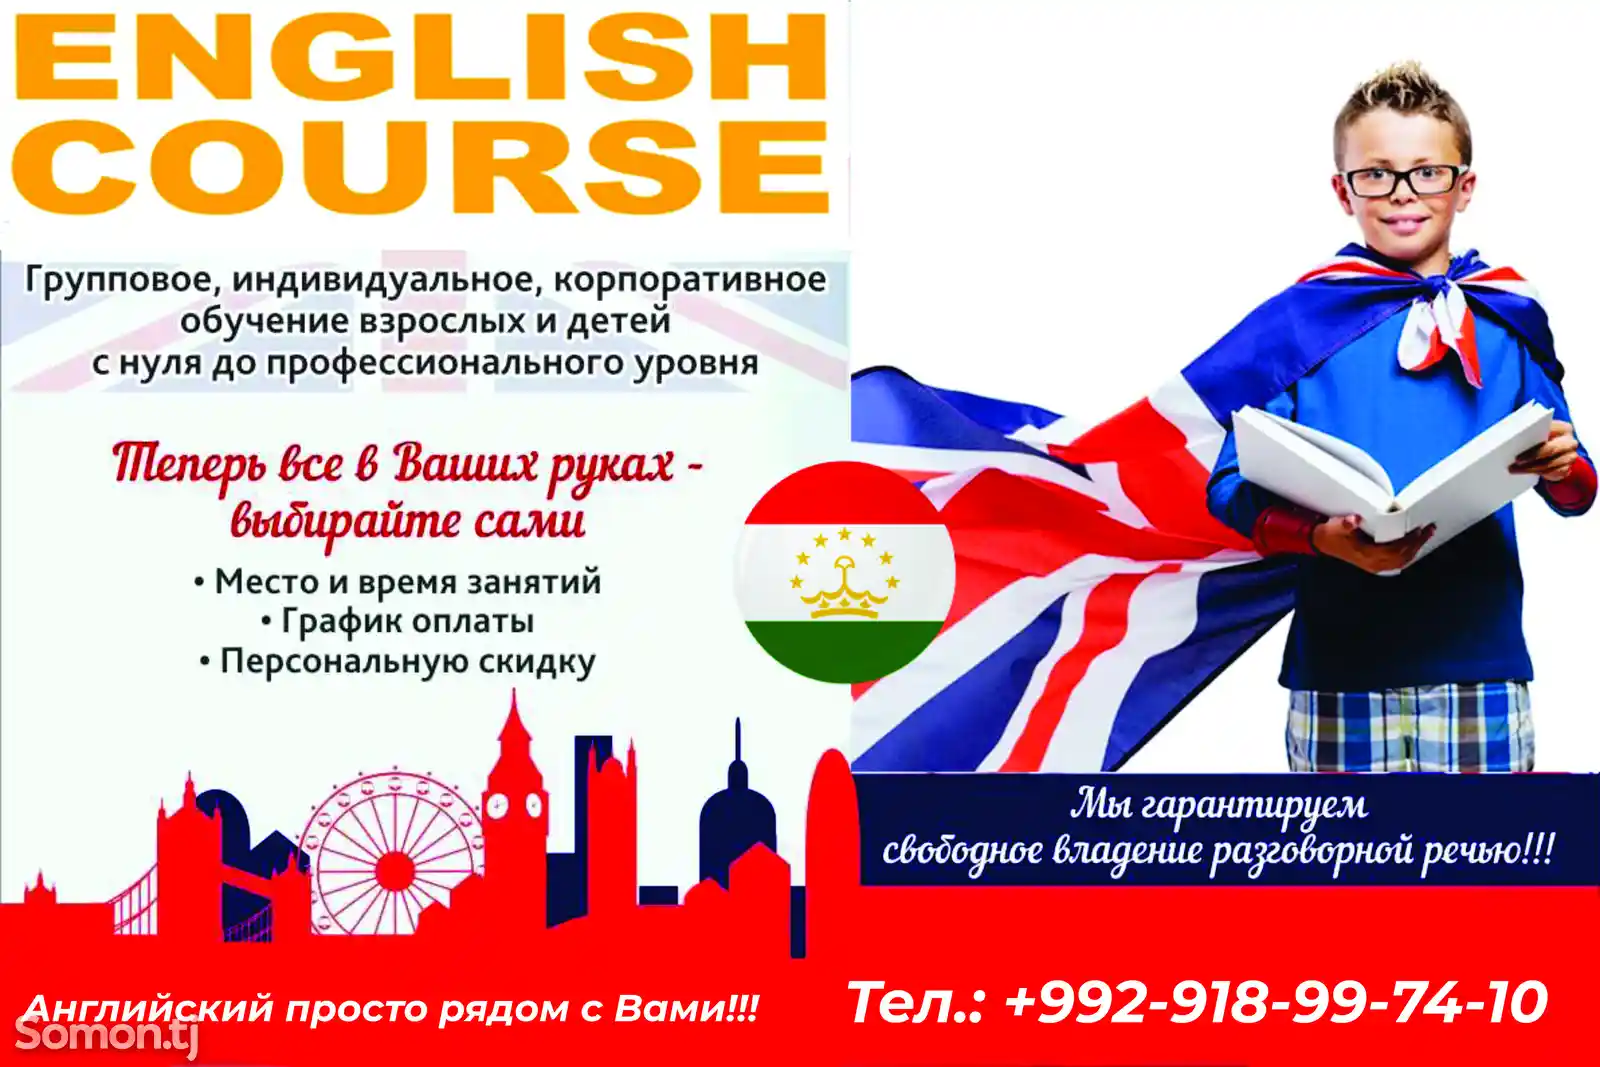 English Course-1